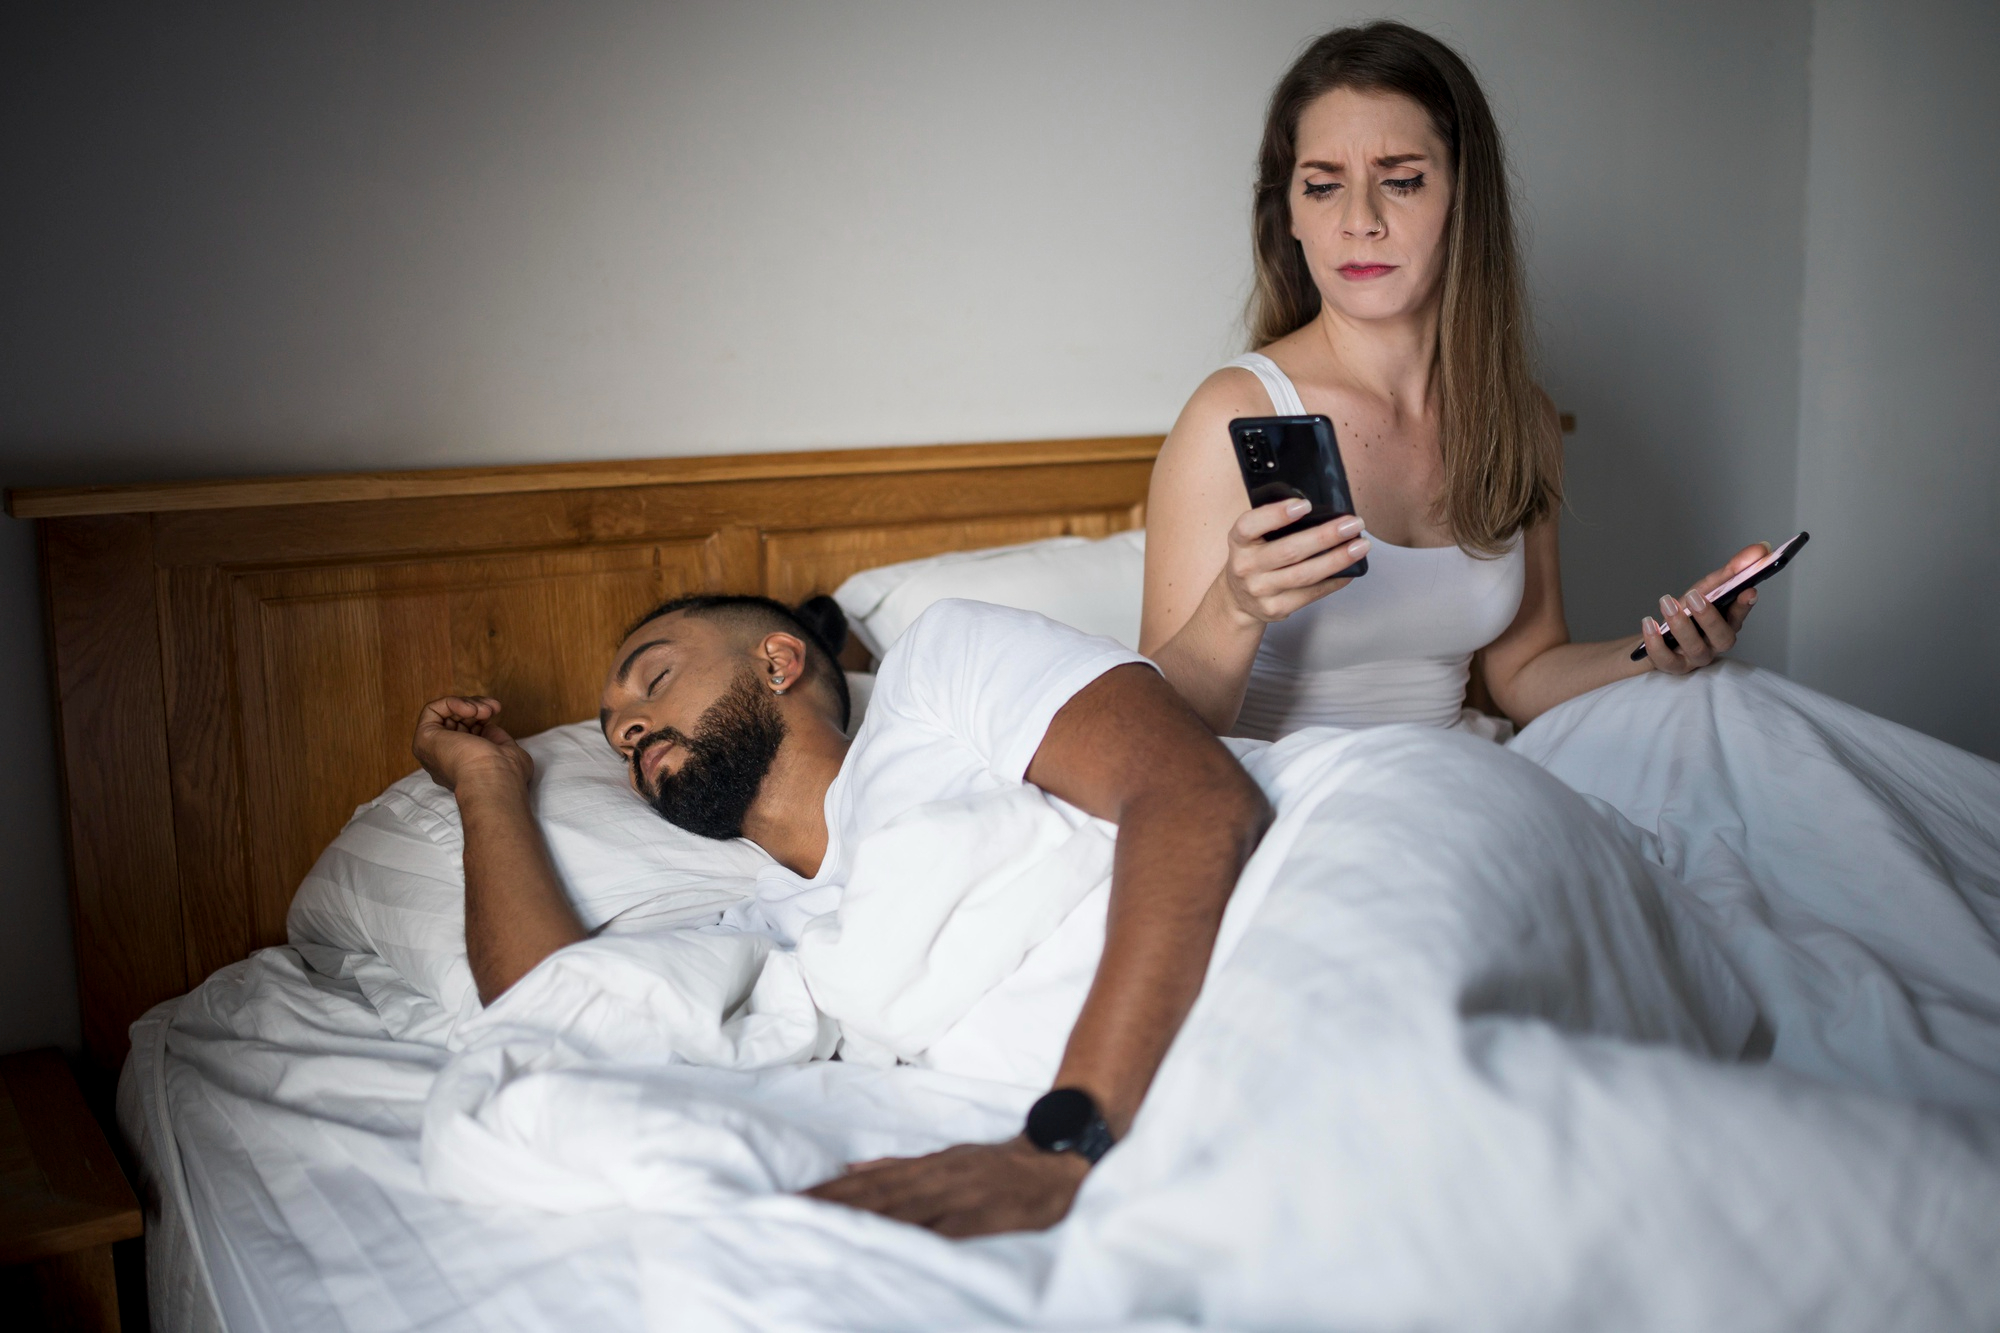 Une femme qui fouille dans le téléphone d'un homme pendant qu'il dort | Source : Freepik